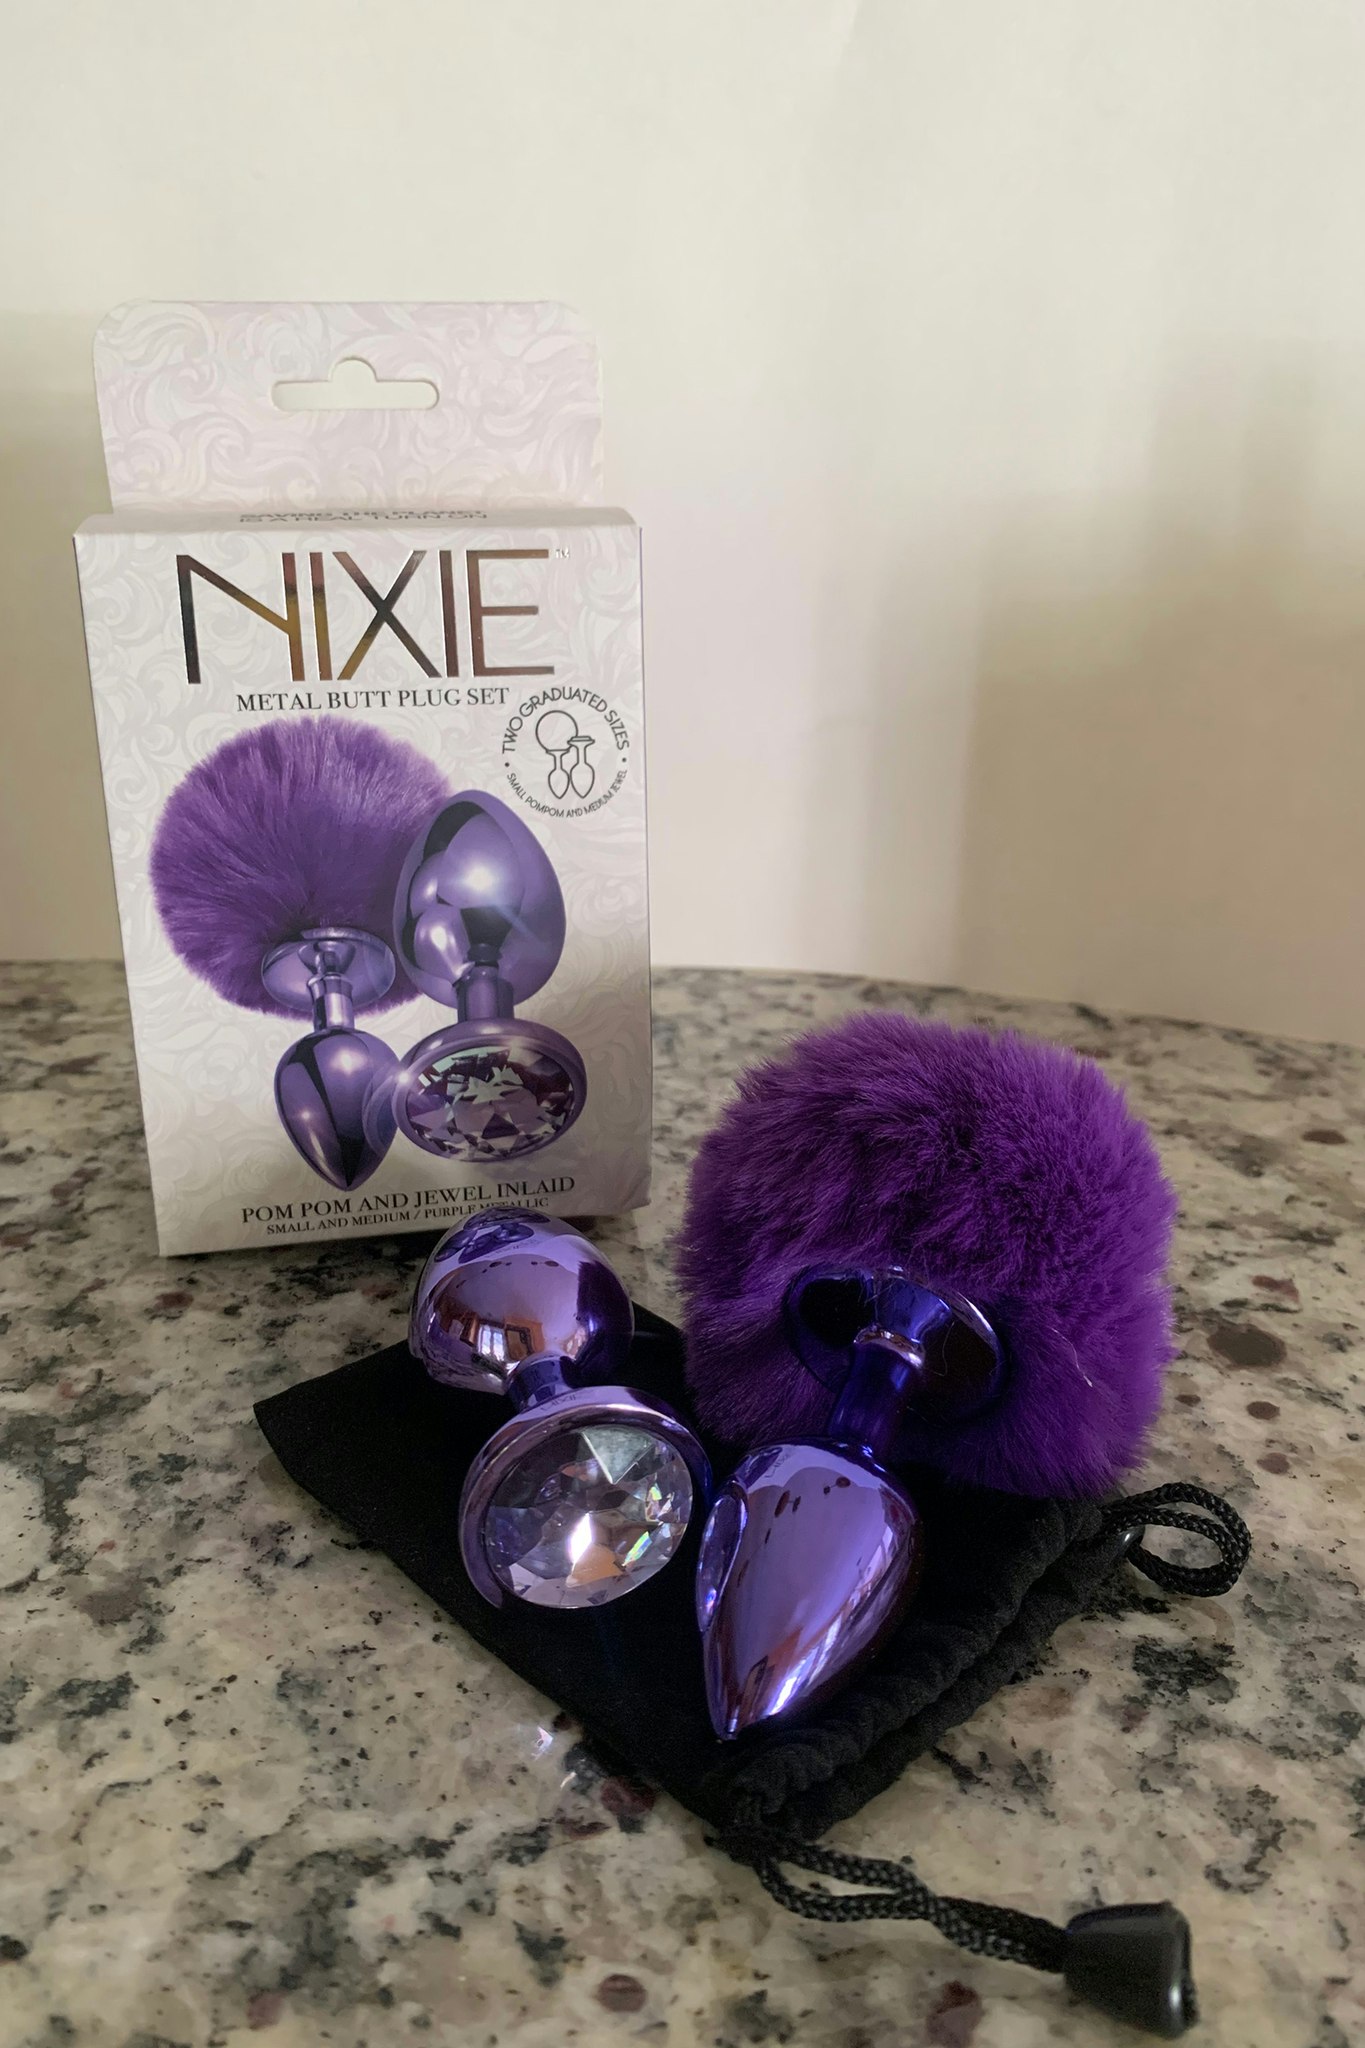 Nixie Metal Butt Plug Set, Pom pom and jewel